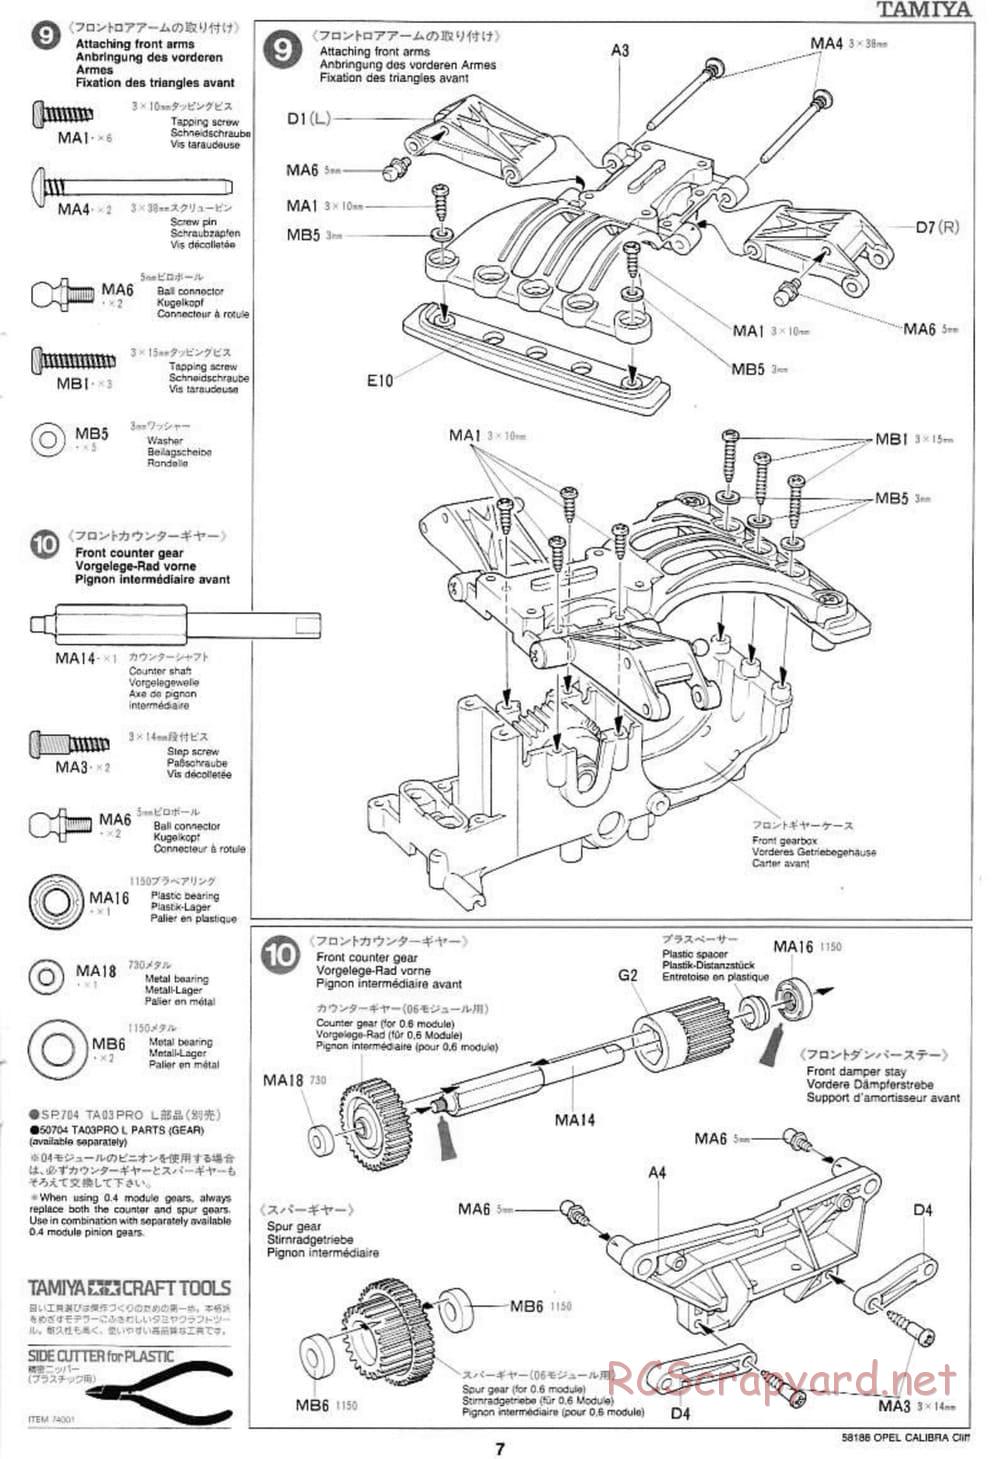 Tamiya - Opel Calibra Cliff - TA-03F Chassis - Manual - Page 7